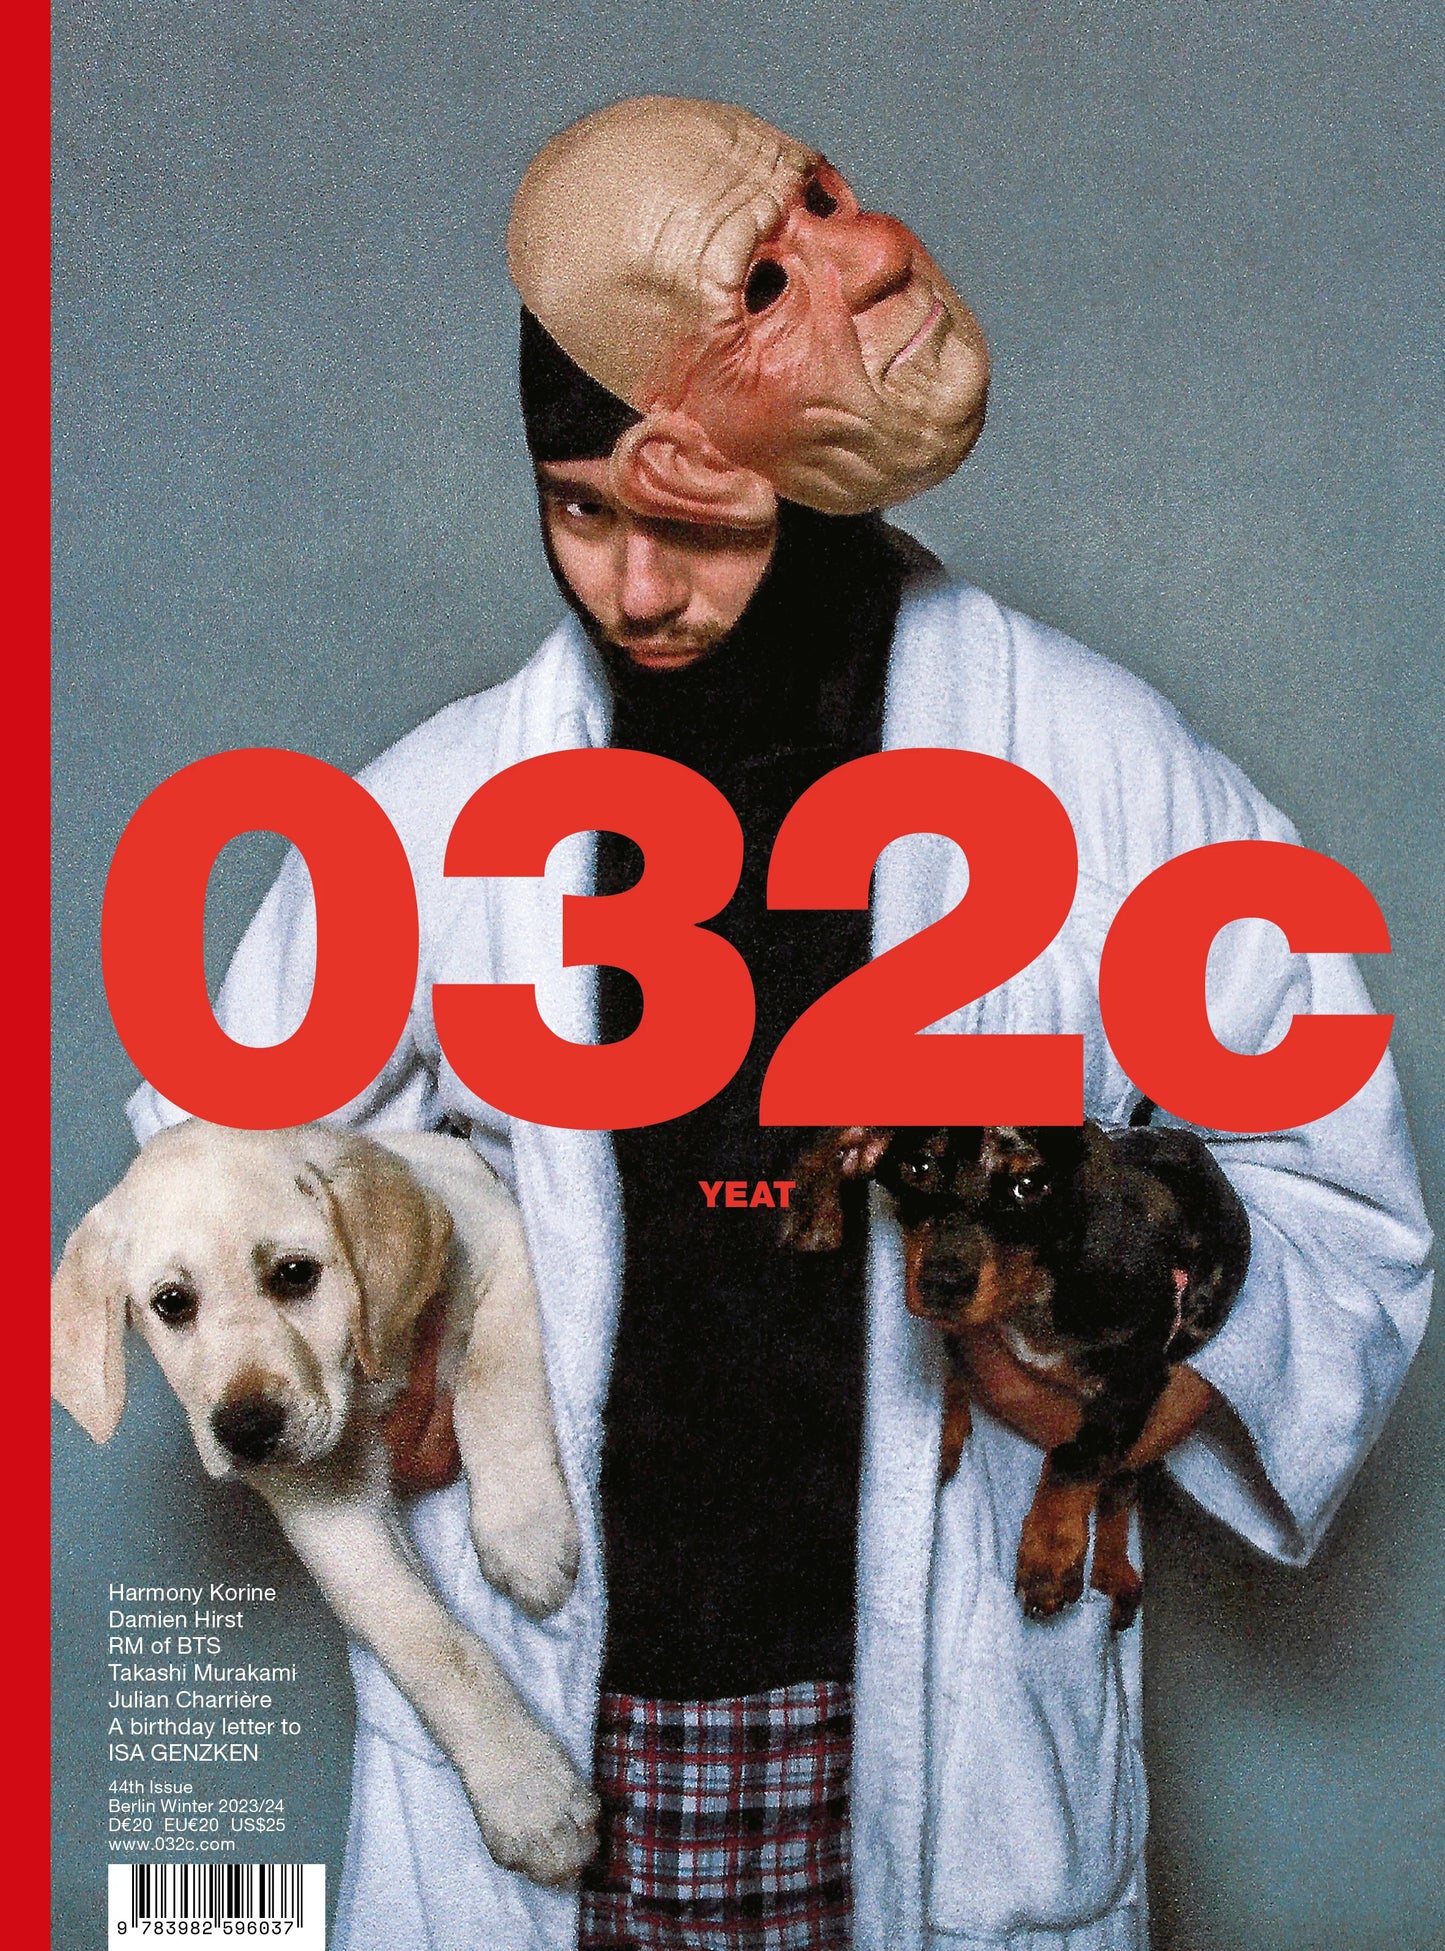 032c Magazine